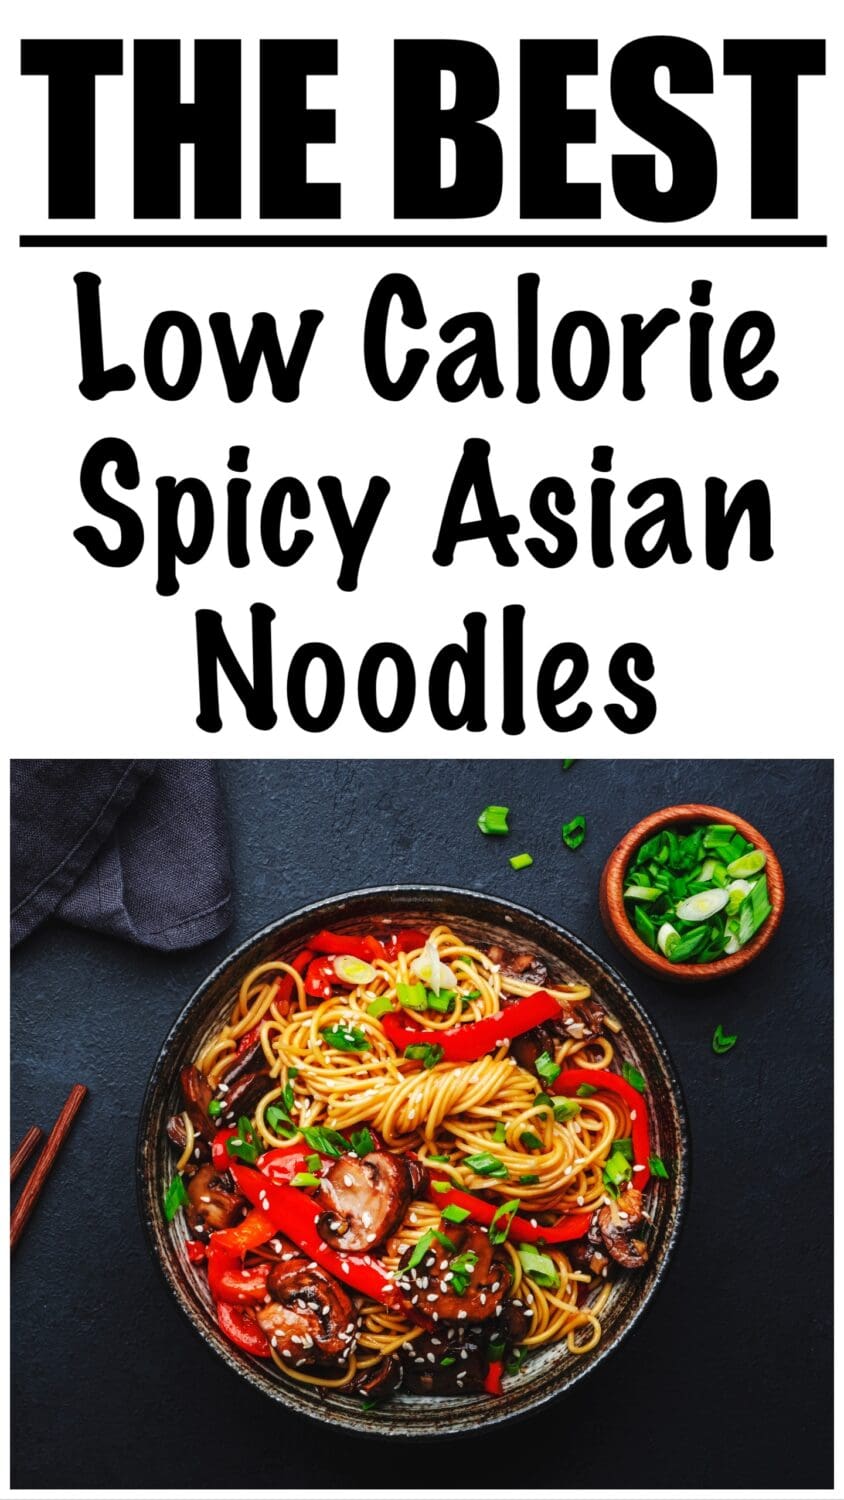 Low Calorie Spicy Asian Noodles